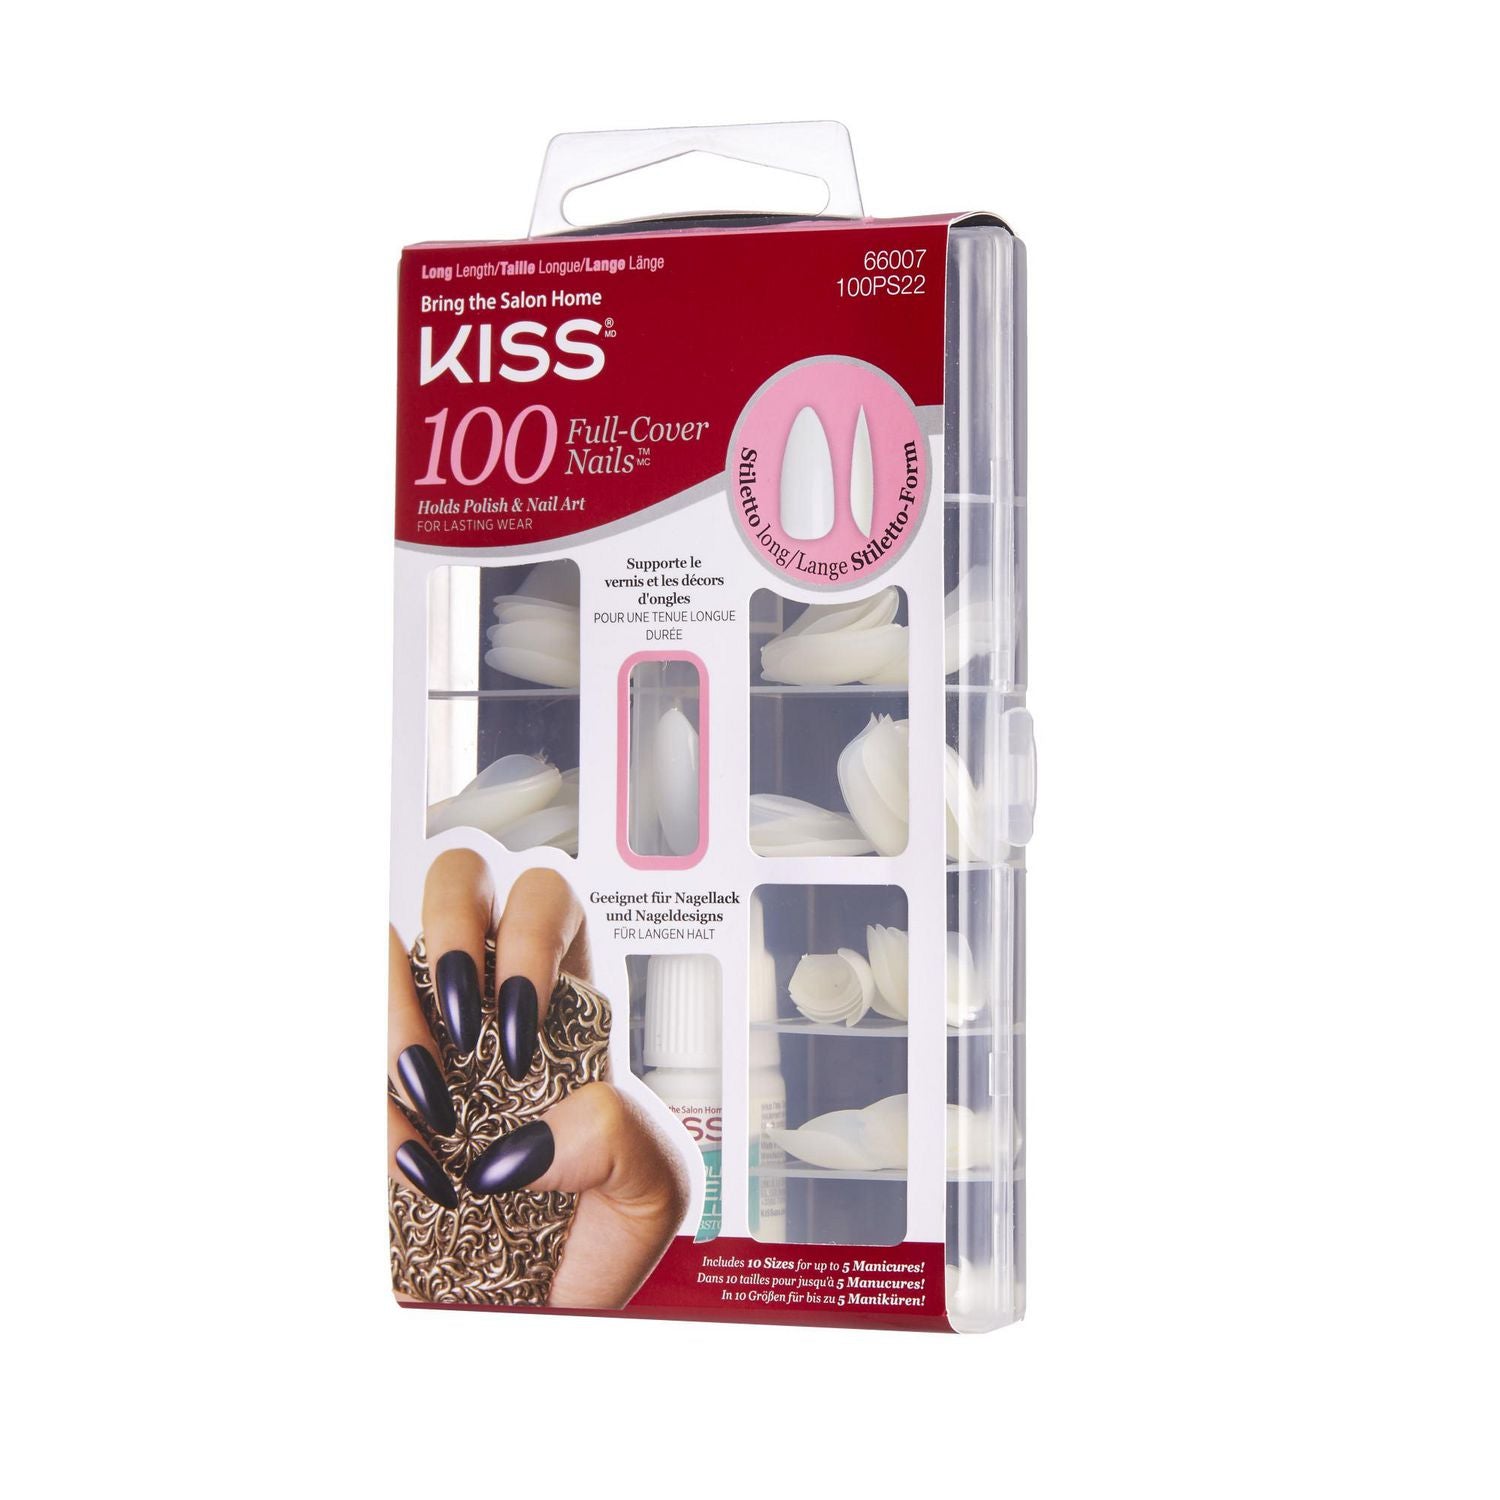 Kiss Full-Cover Long Stiletto Nails 100 PCS